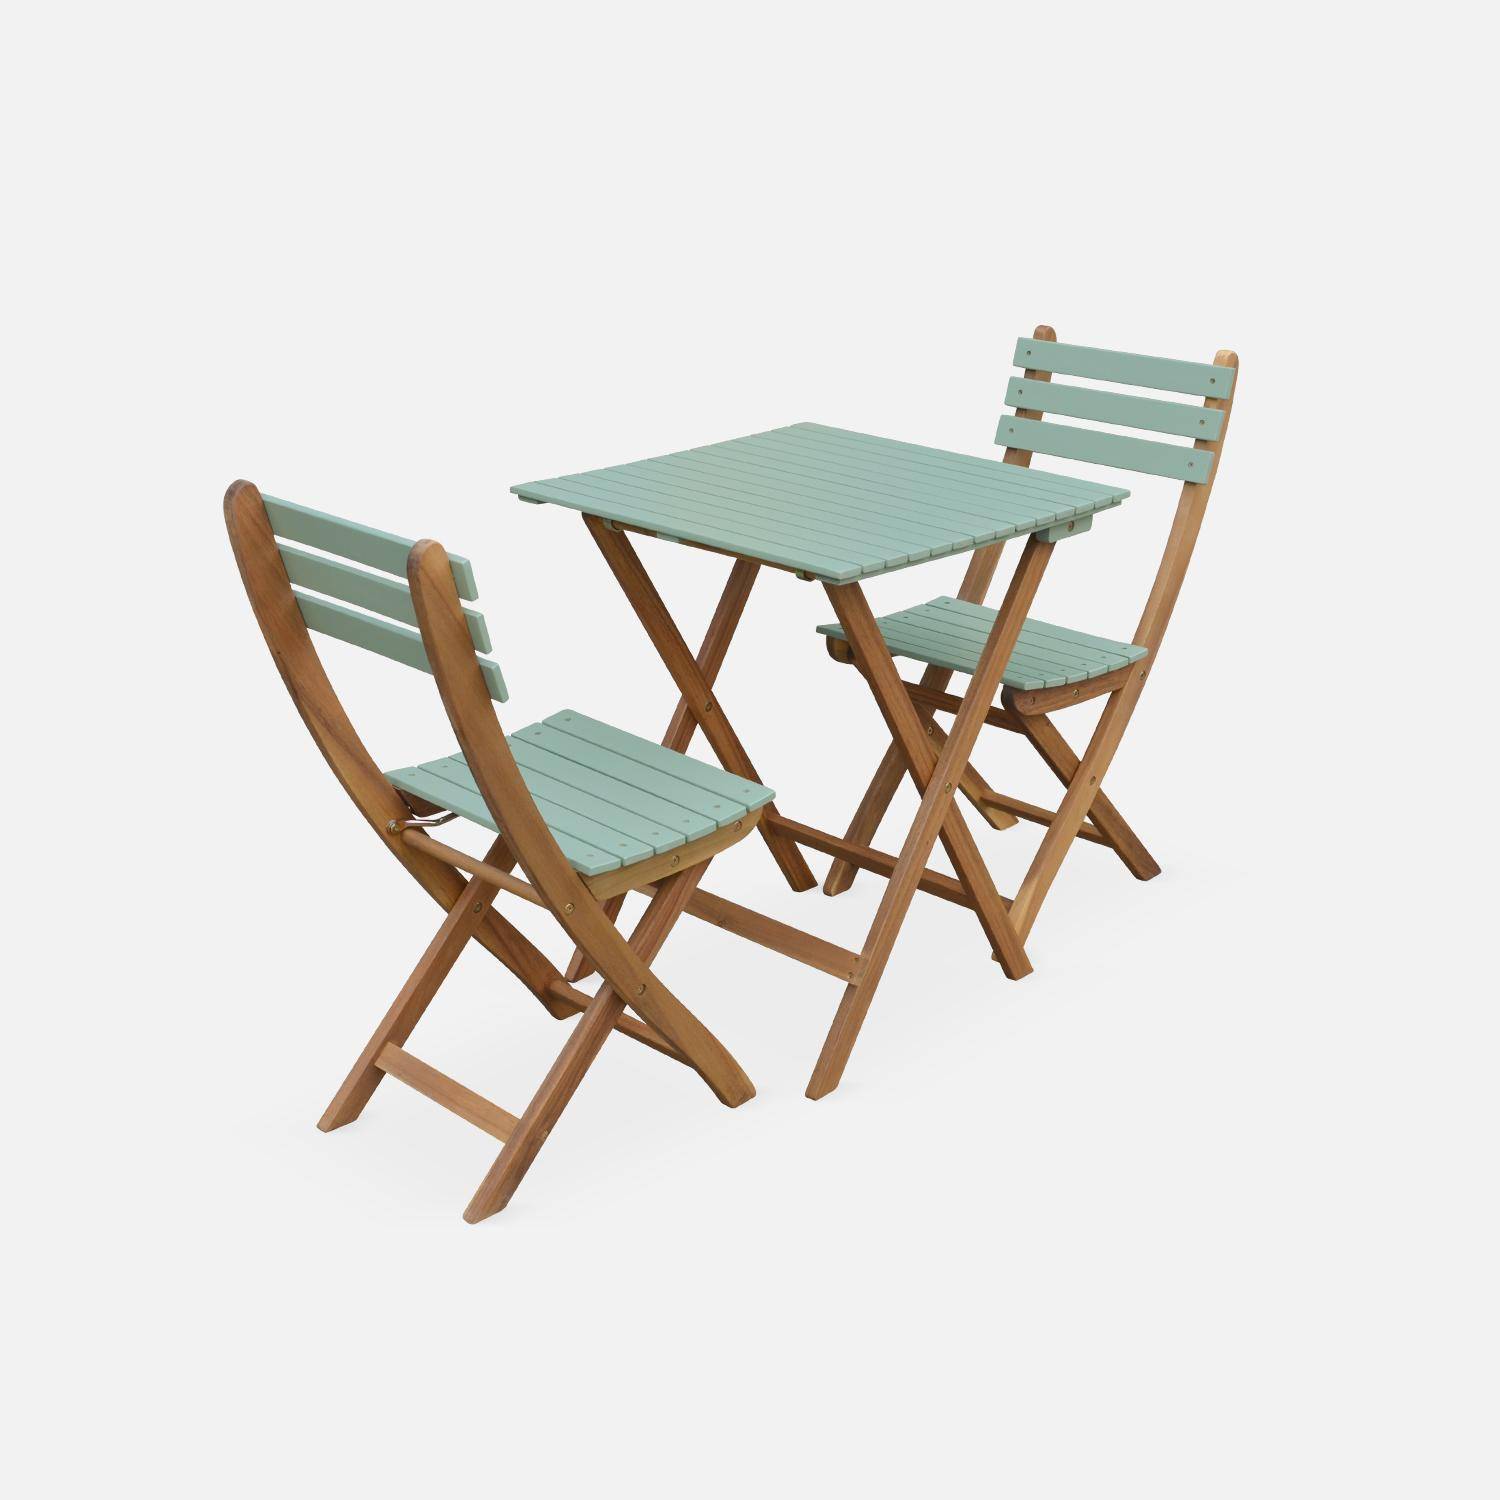 Conjunto de jardín de madera Bistro 60x60cm - Barcelona - verde grisáceo, mesa plegable bicolor con 2 sillas plegables, acacia Photo4